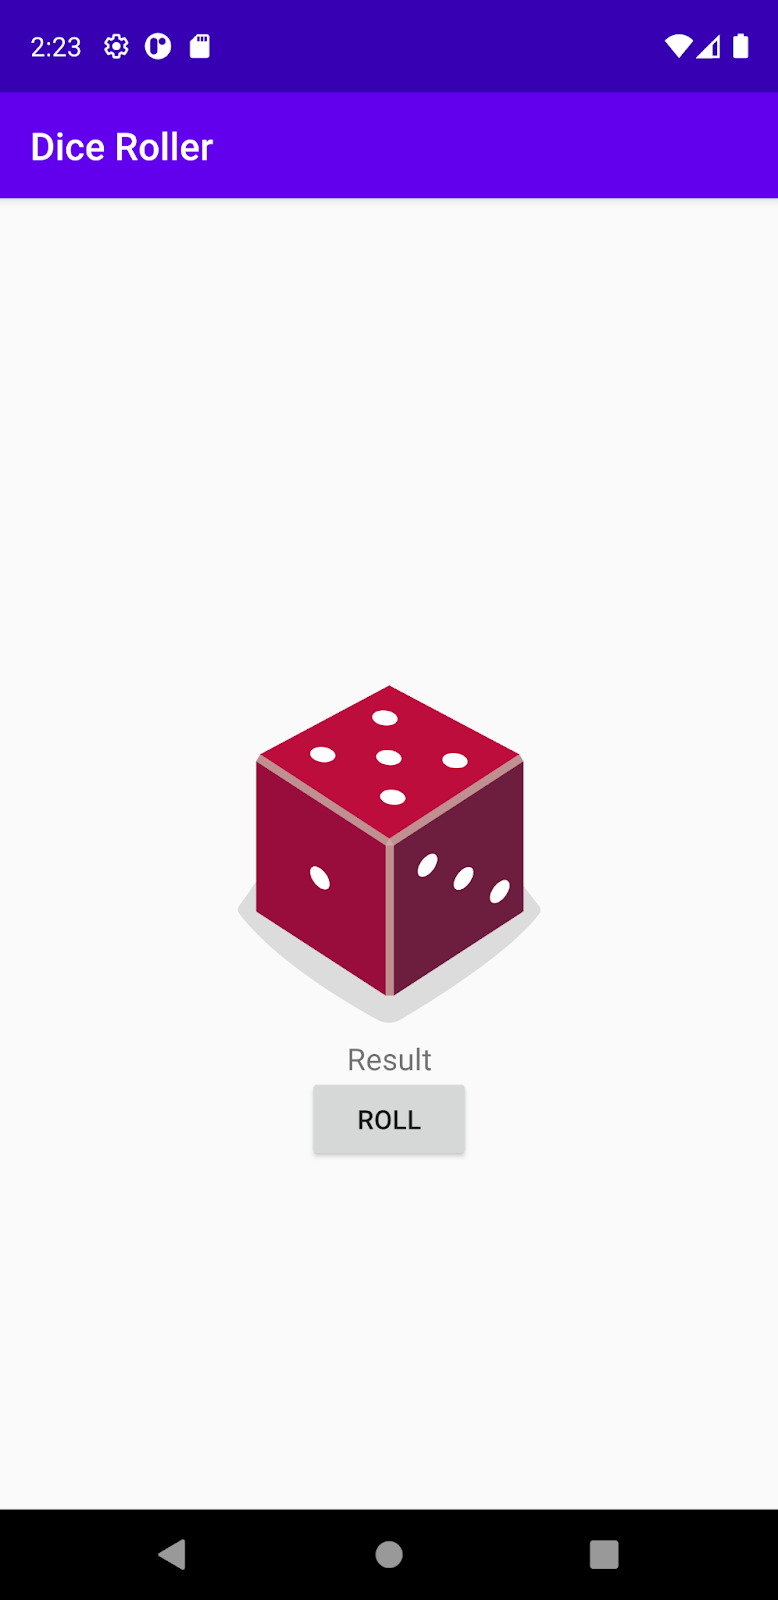 App de Dice Roller con un cuadro que dice "Result" como marcador de posición